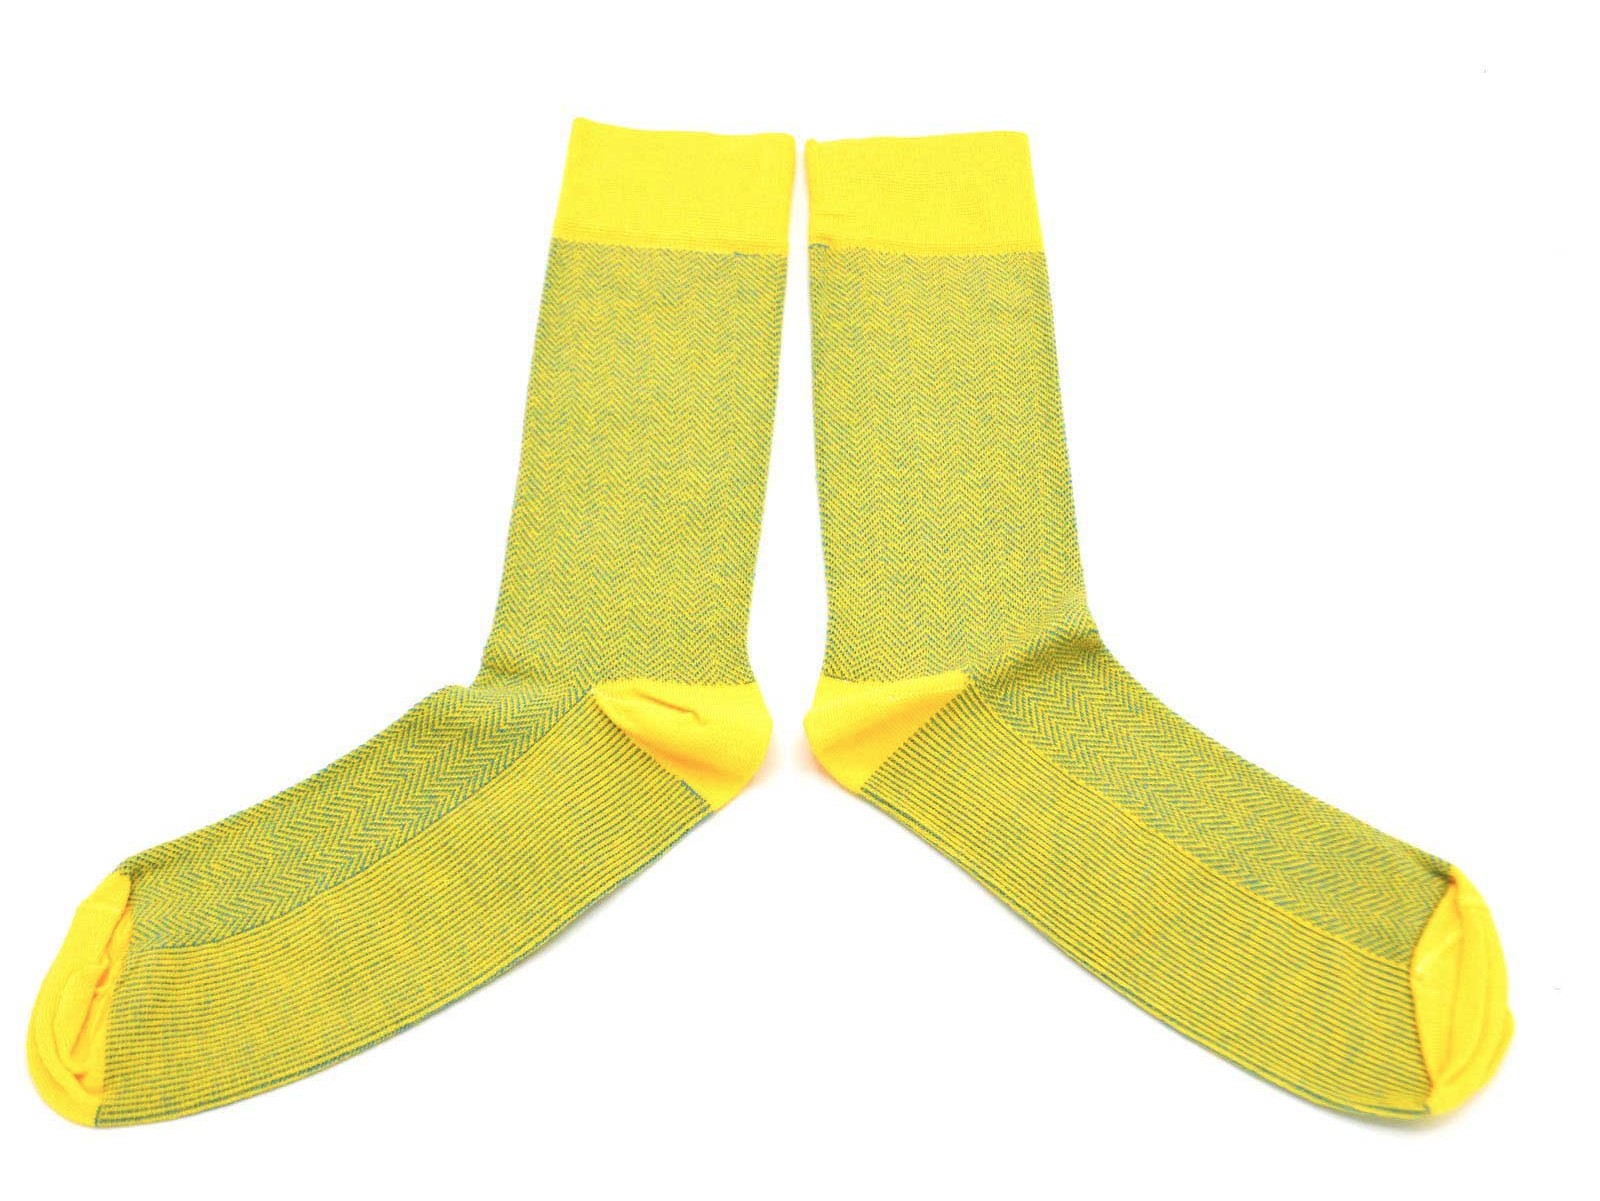 chaussettes-fantaisie-hommes-femmes-en-coton-jaunes-à-motifs-chevrons jaunes-bleu-ciel-remaillées-à-la-main